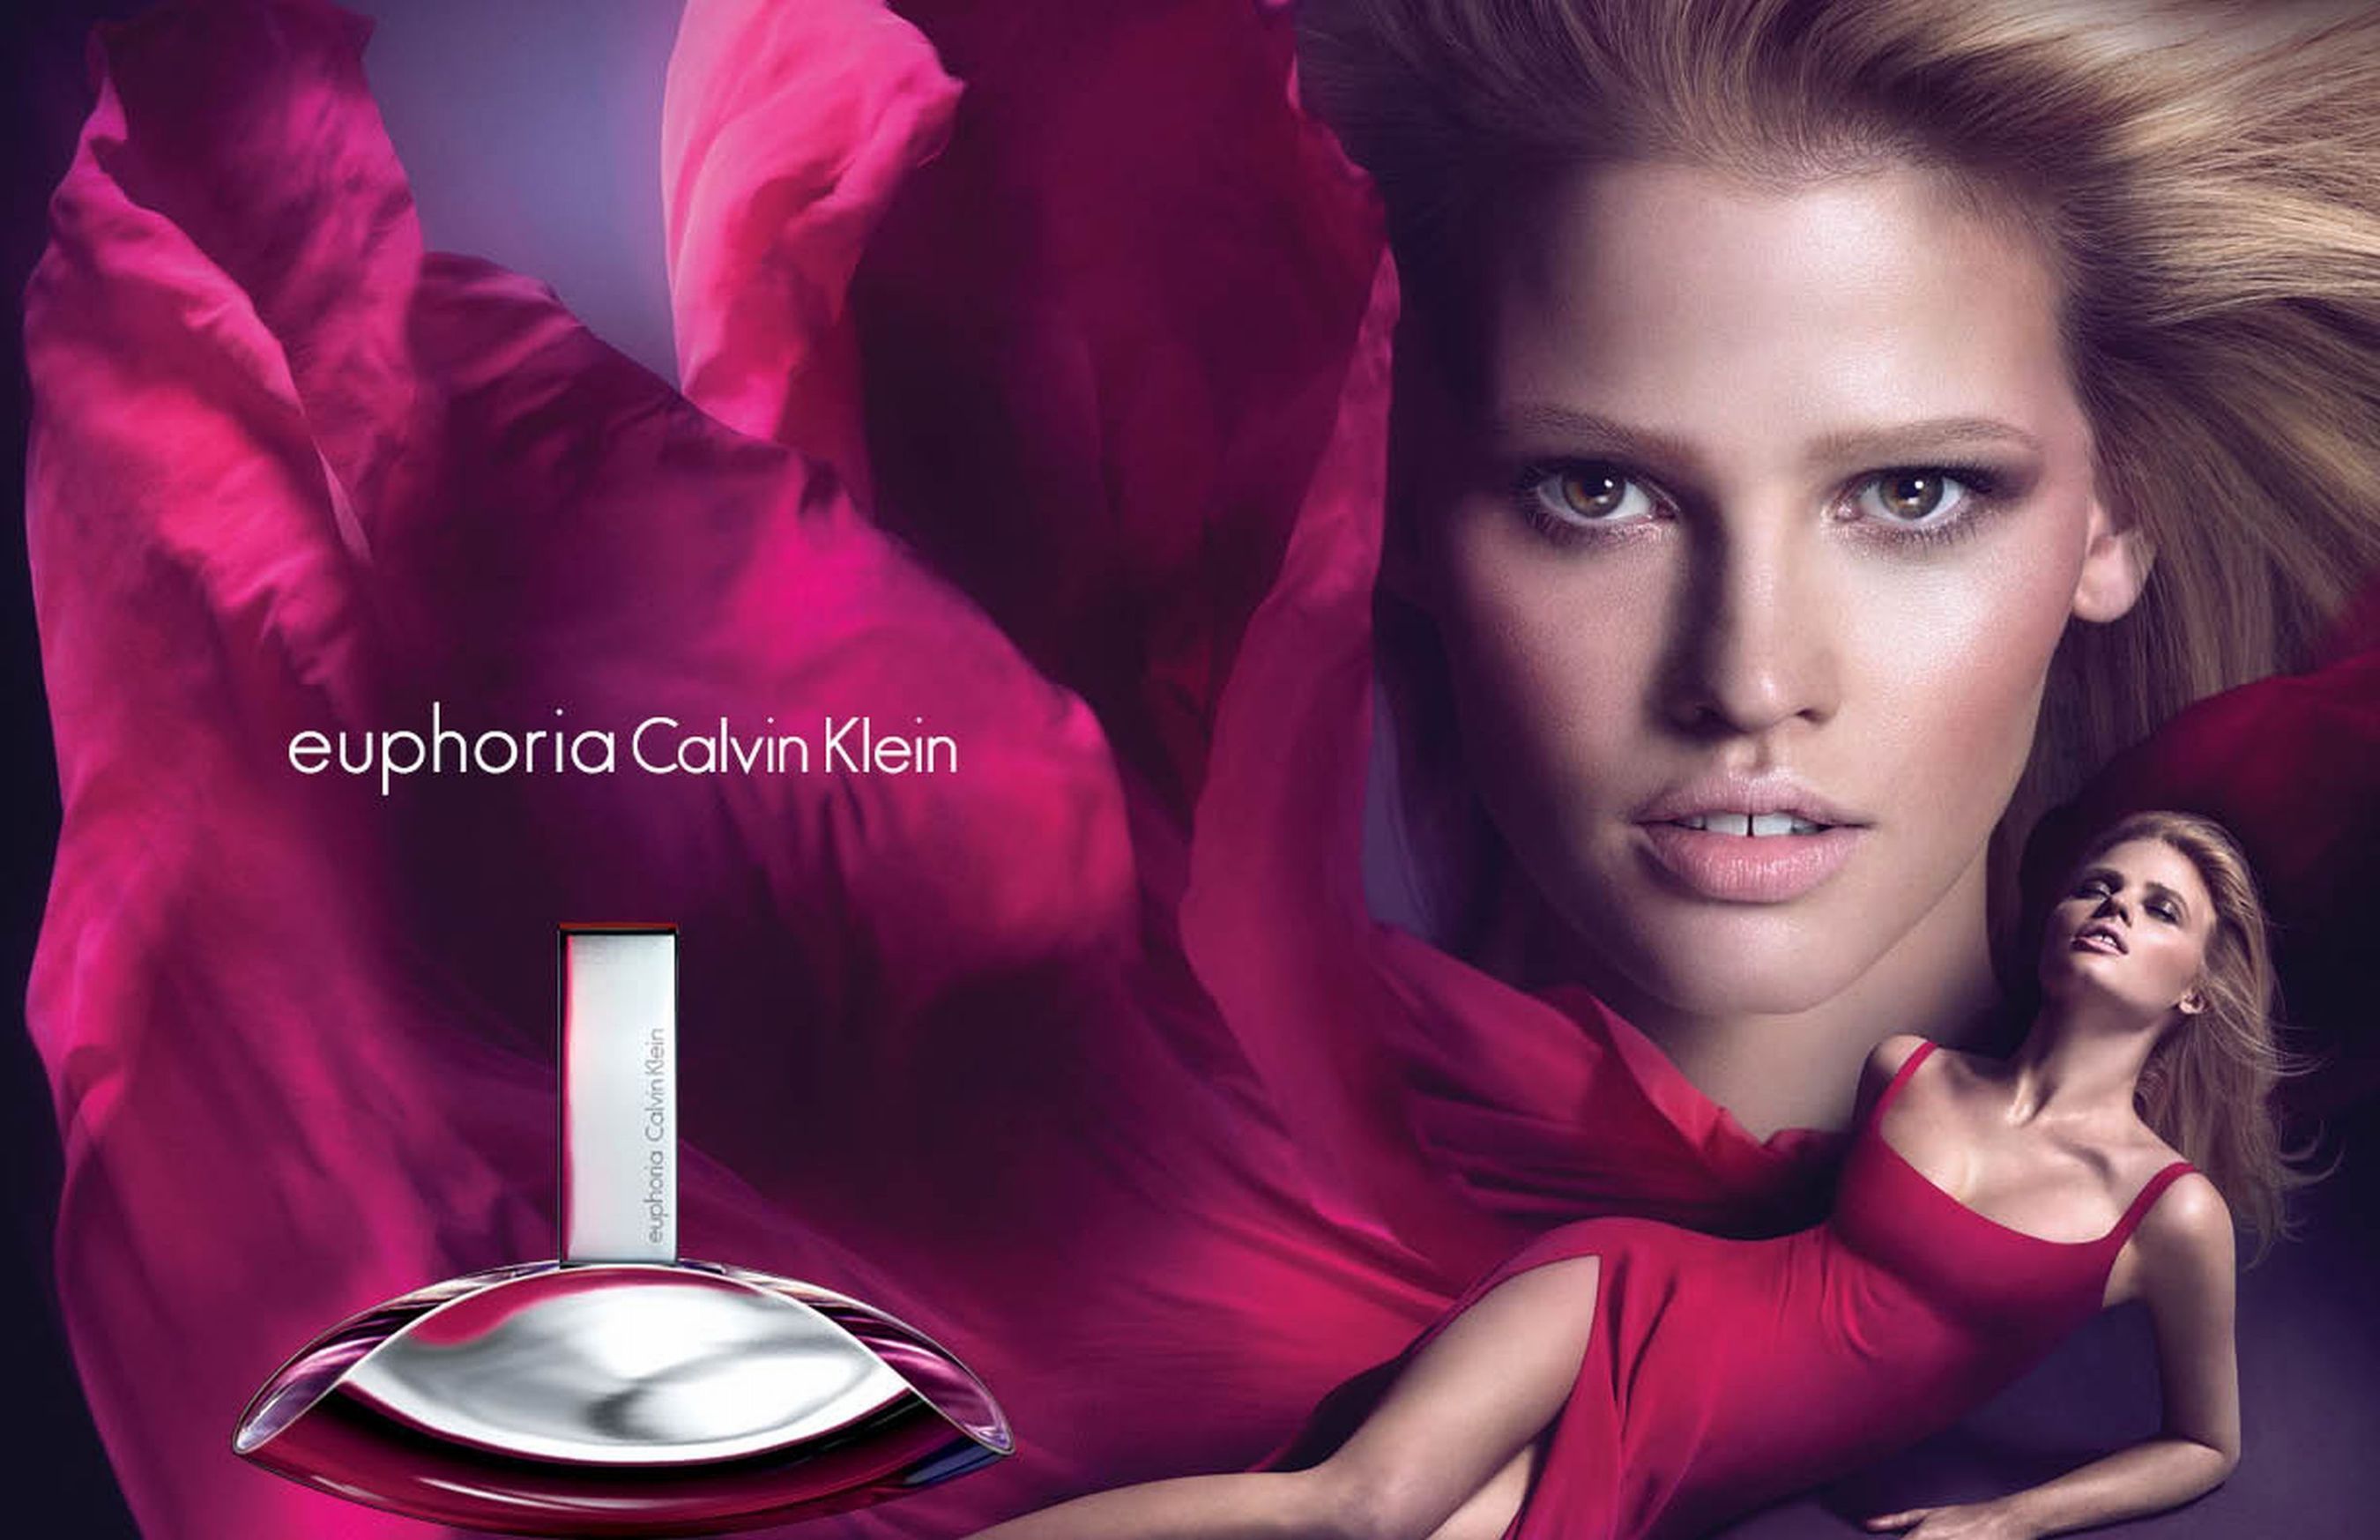 Calvin Klein Fragrances Announces New Worldwide Advertising Campaign for euphoria  Calvin Klein